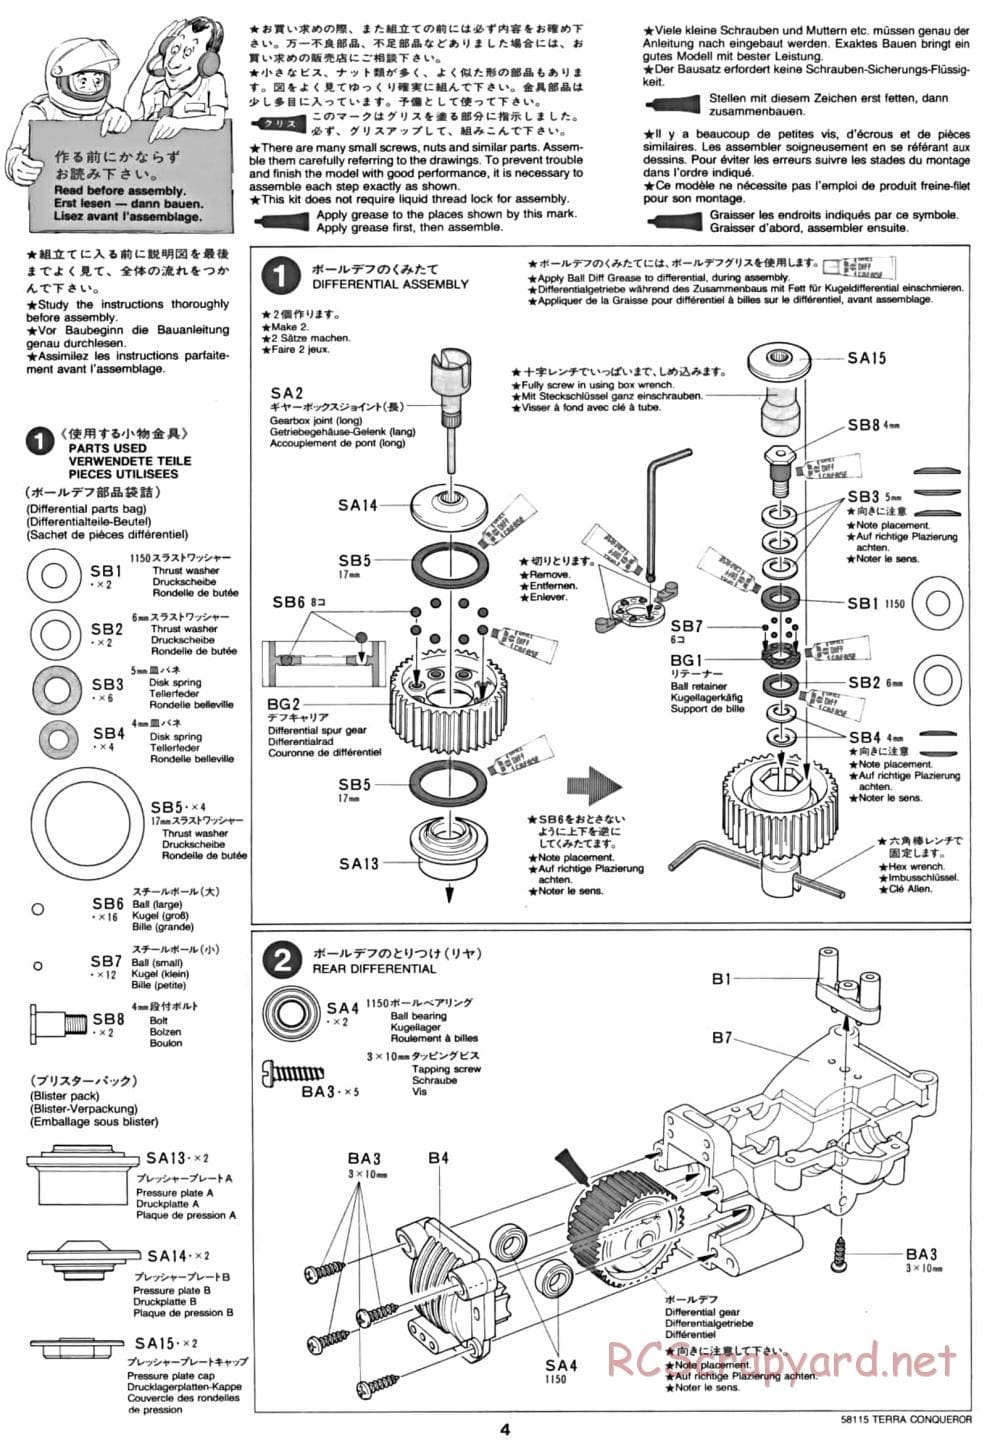 Tamiya - Terra Conqueror Chassis - Manual - Page 4